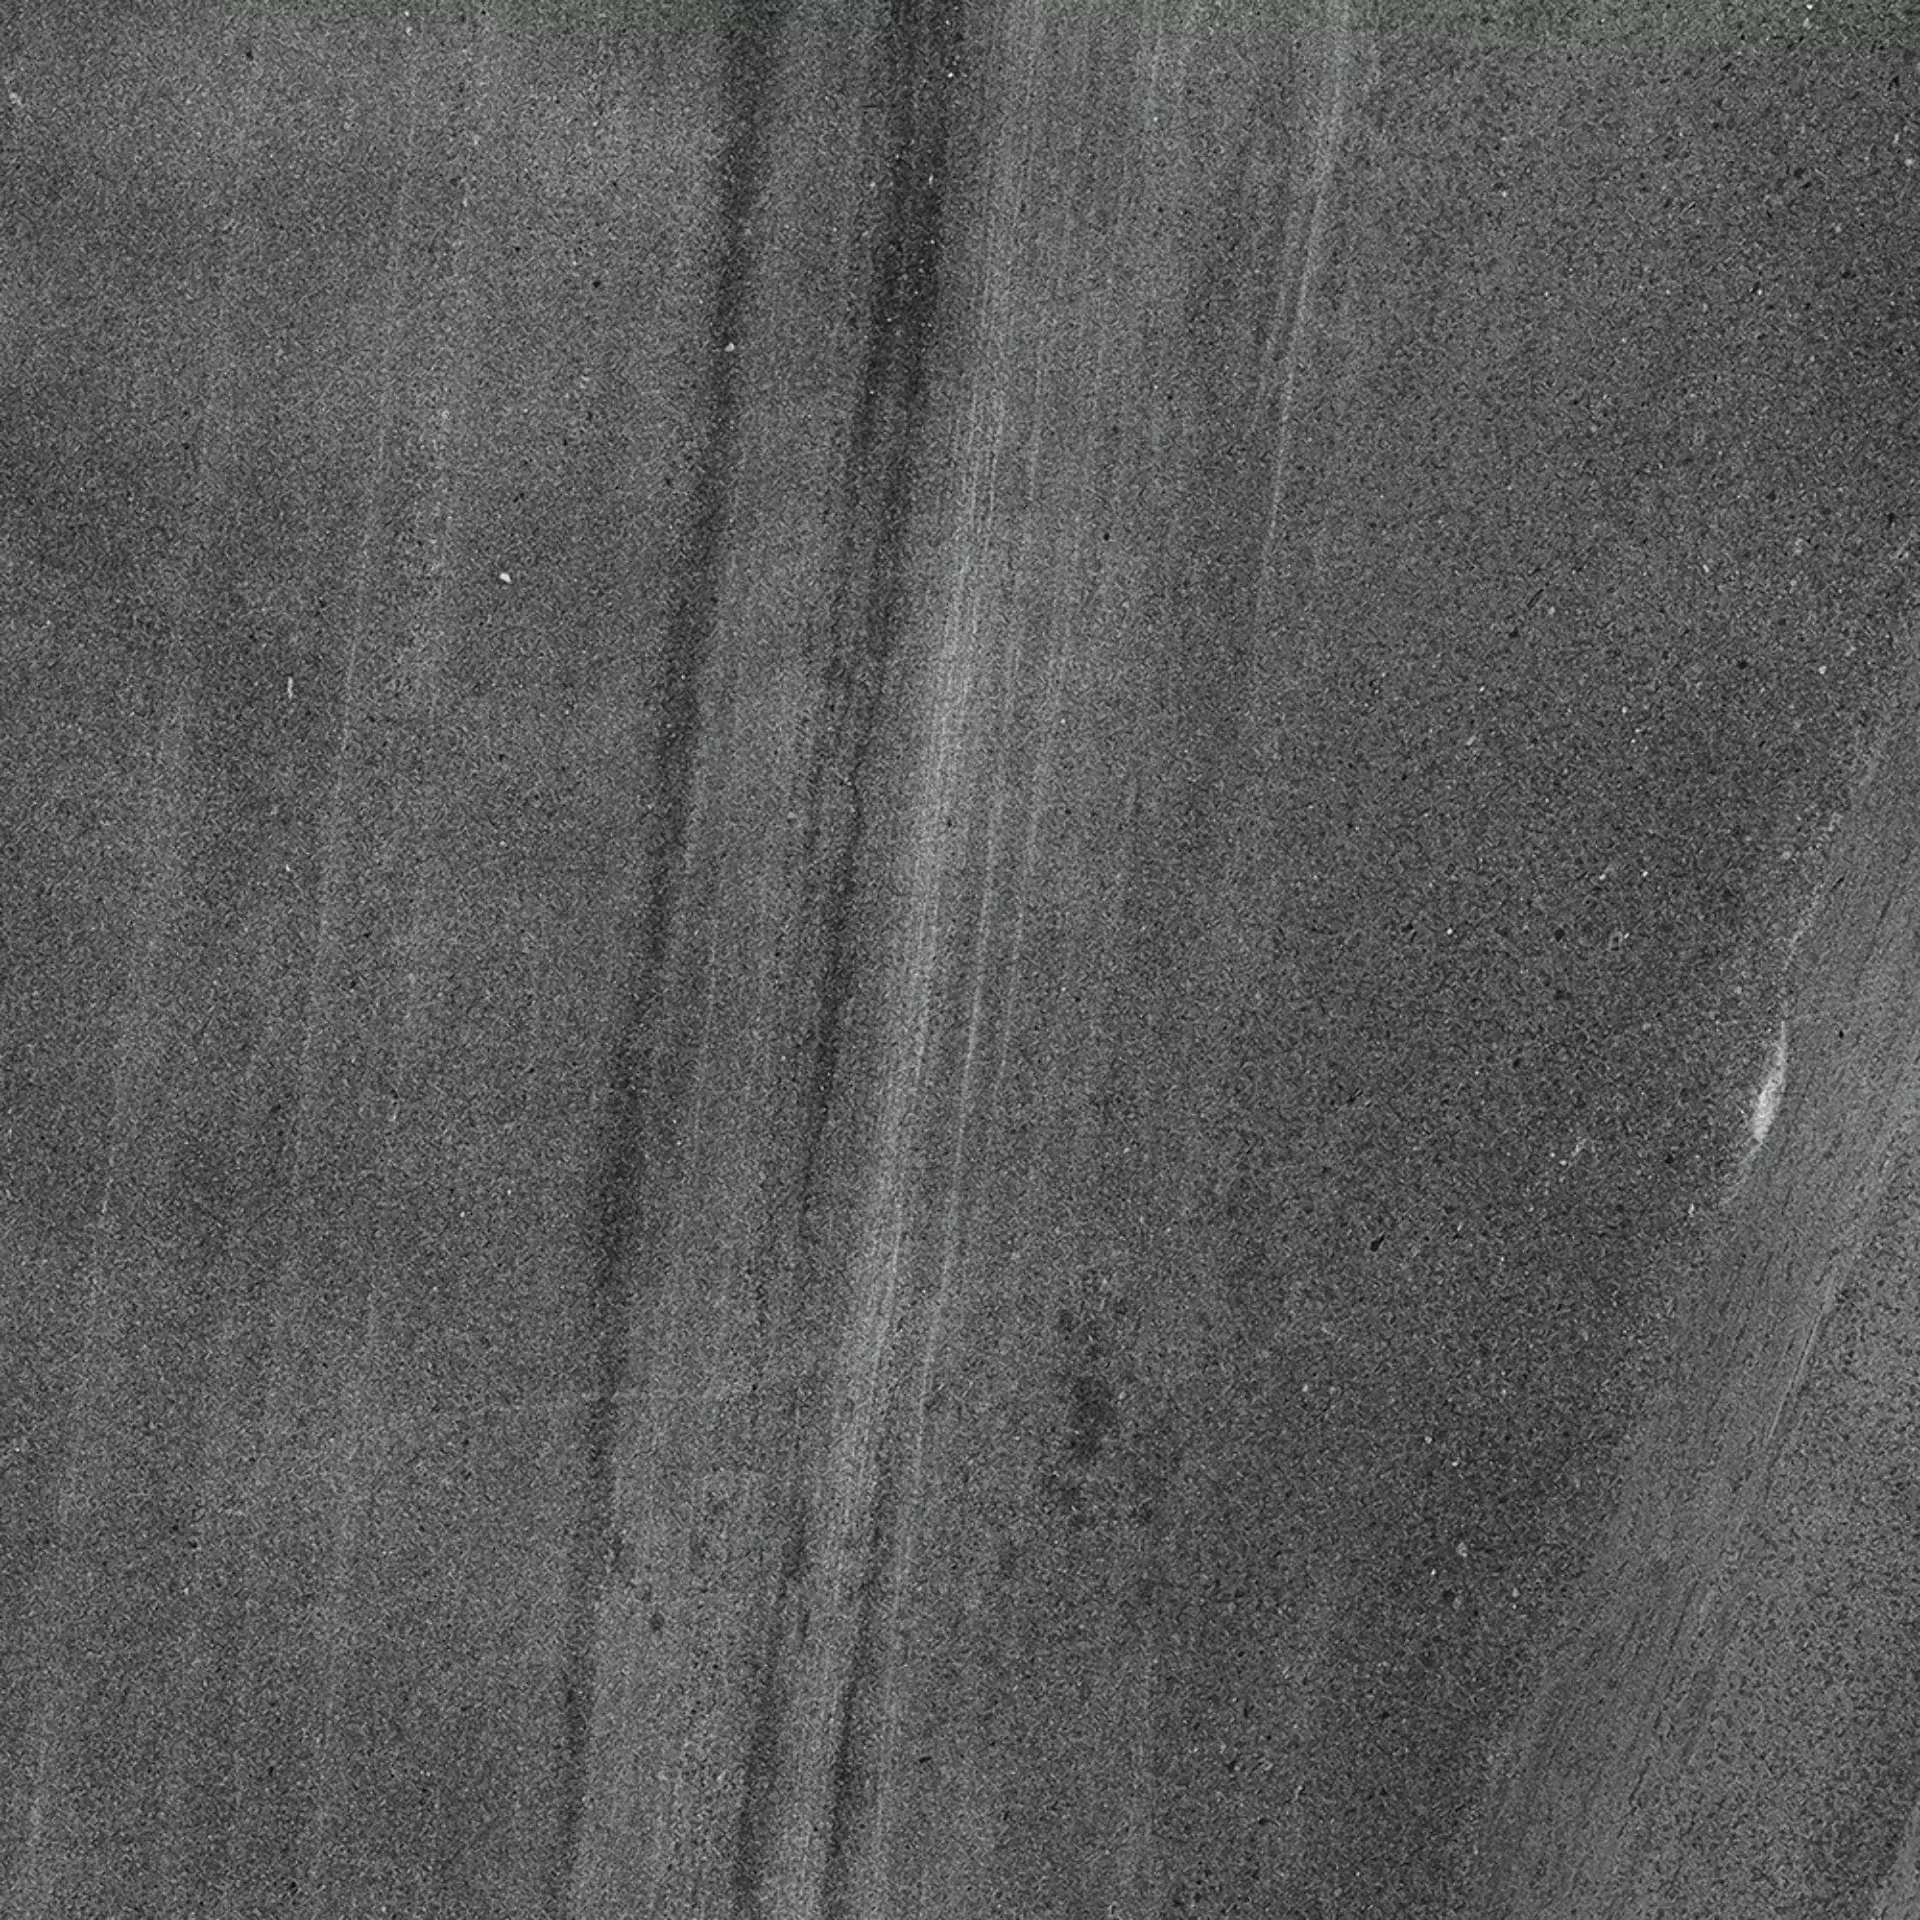 Ariostea Ultra Pietre Basaltina Antracite Prelucidato Basaltina Antracite UP6P100442 gelaeppt 100x100cm rektifiziert 6mm